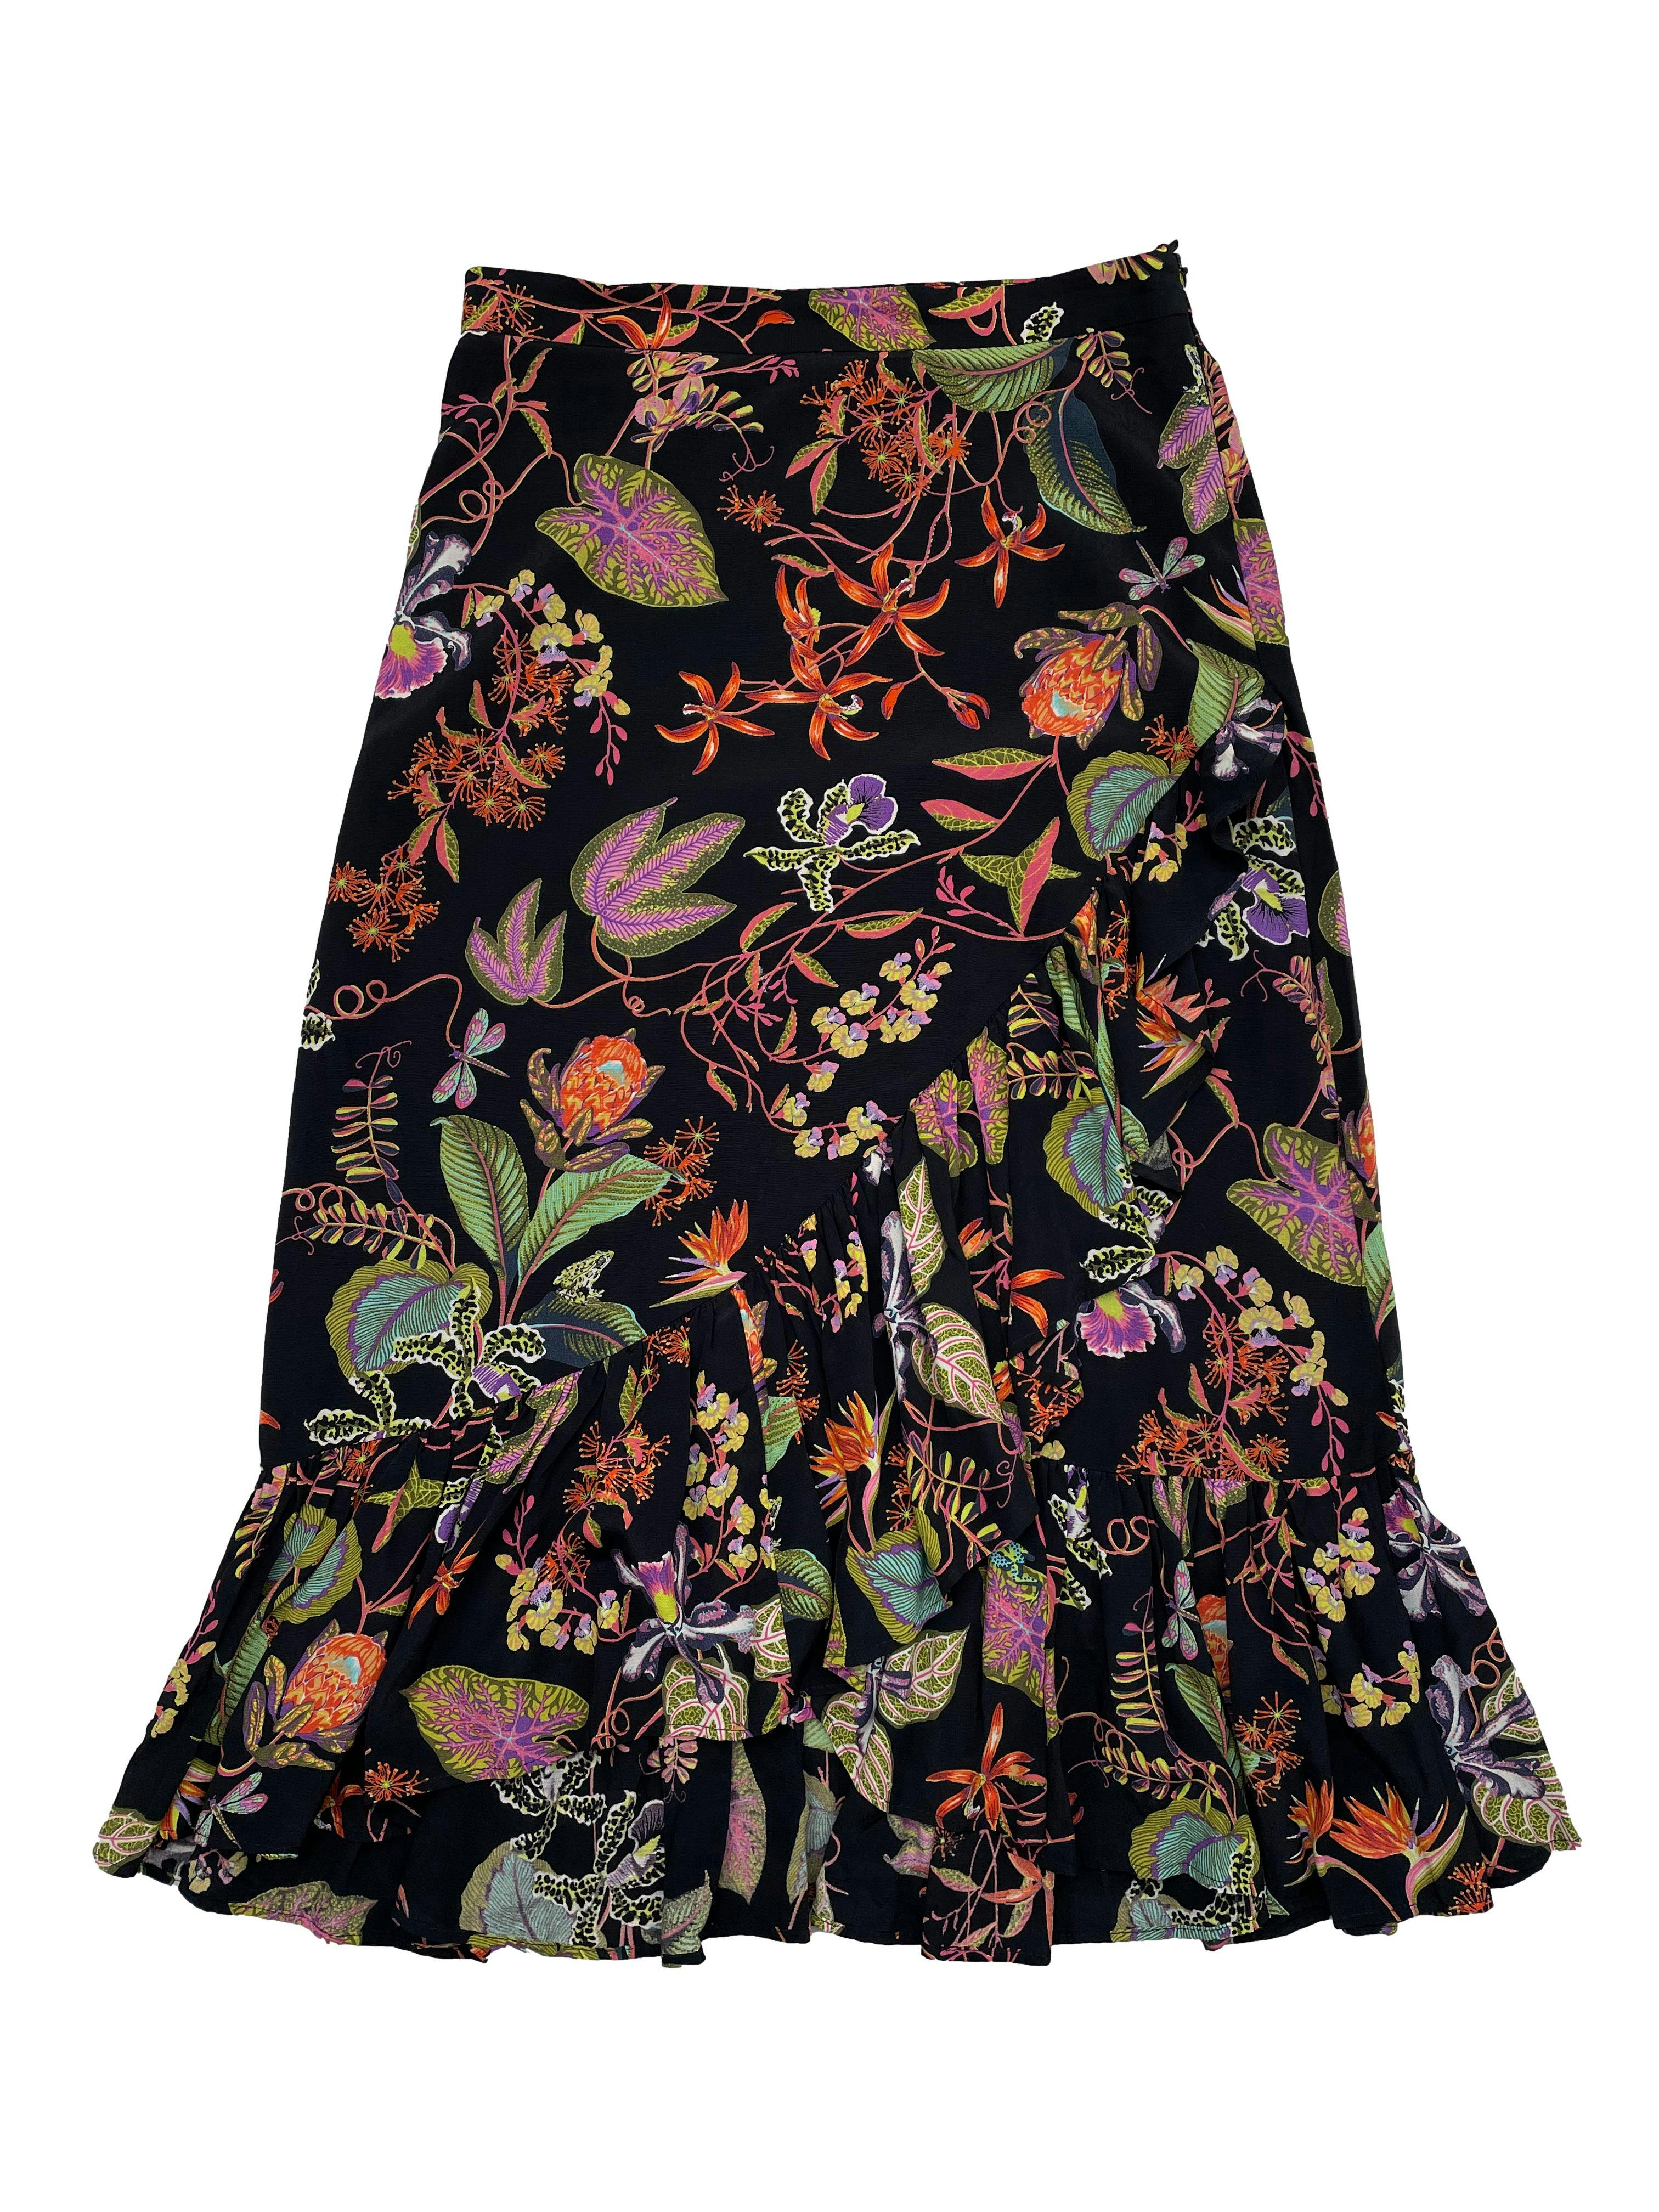 Falda midi H&M negra con estampado floral y volantes, tela fresca ligeramente satinada, cierre lateral invisible. Cintura 78cm, Largo 85cm.